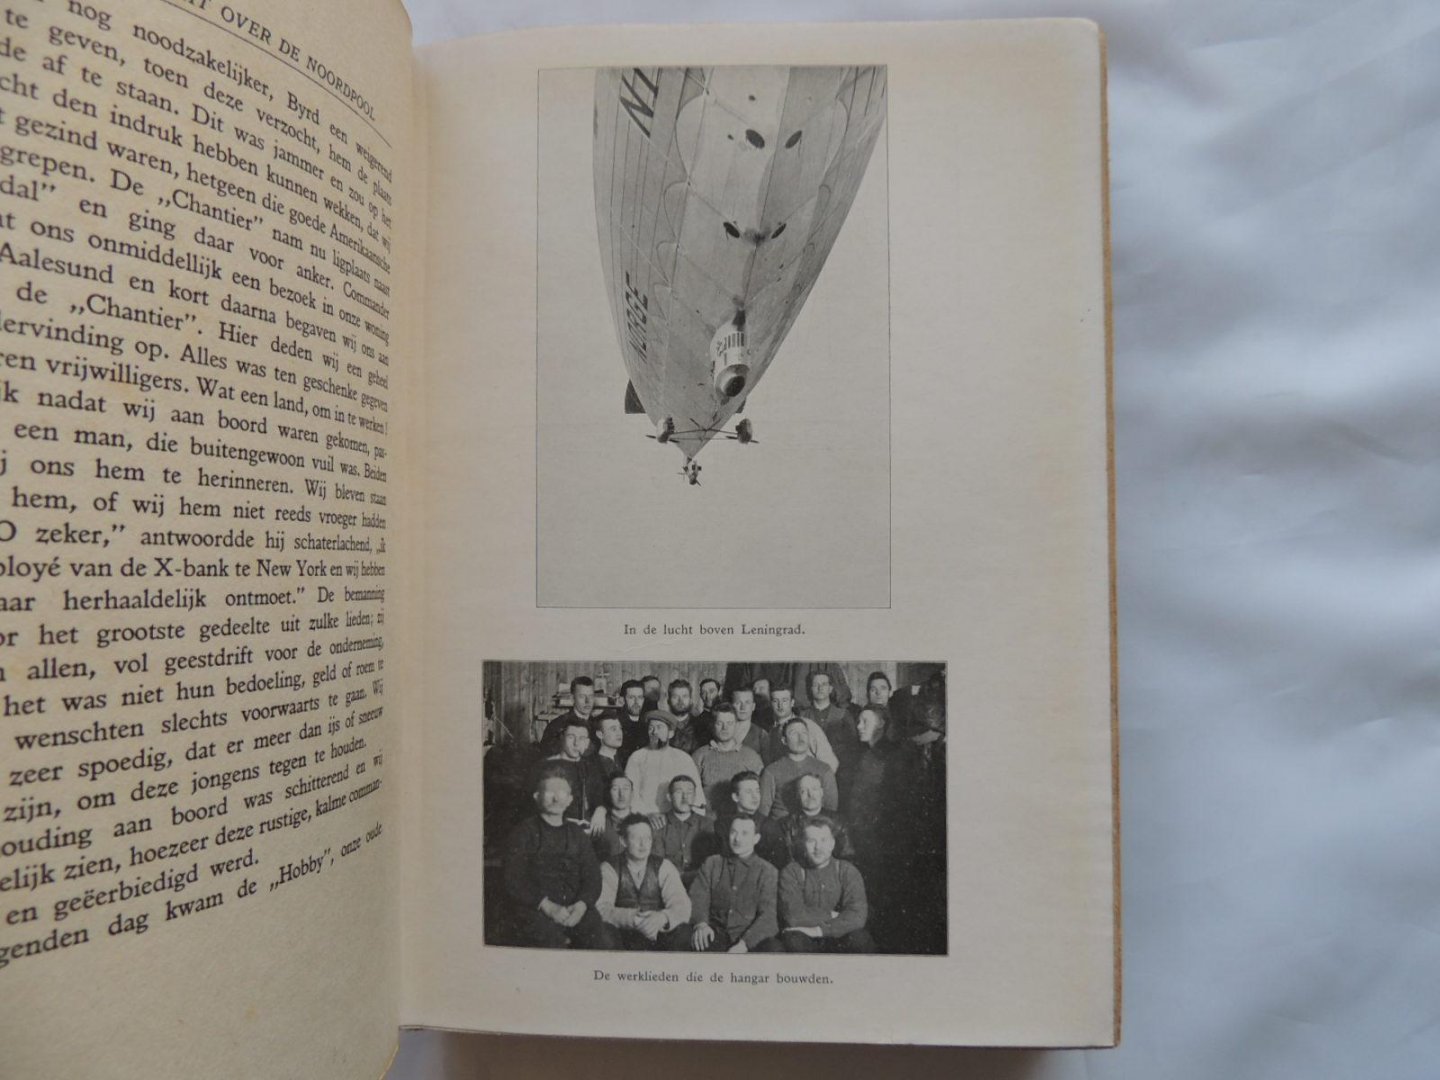 Amundsen Roald, Ellsworth Lincoln, vertaald door Blok Louis - De eerste vlucht over de Noordpool Met meer dan 120 illustraties - Geatoriseerde uitgave